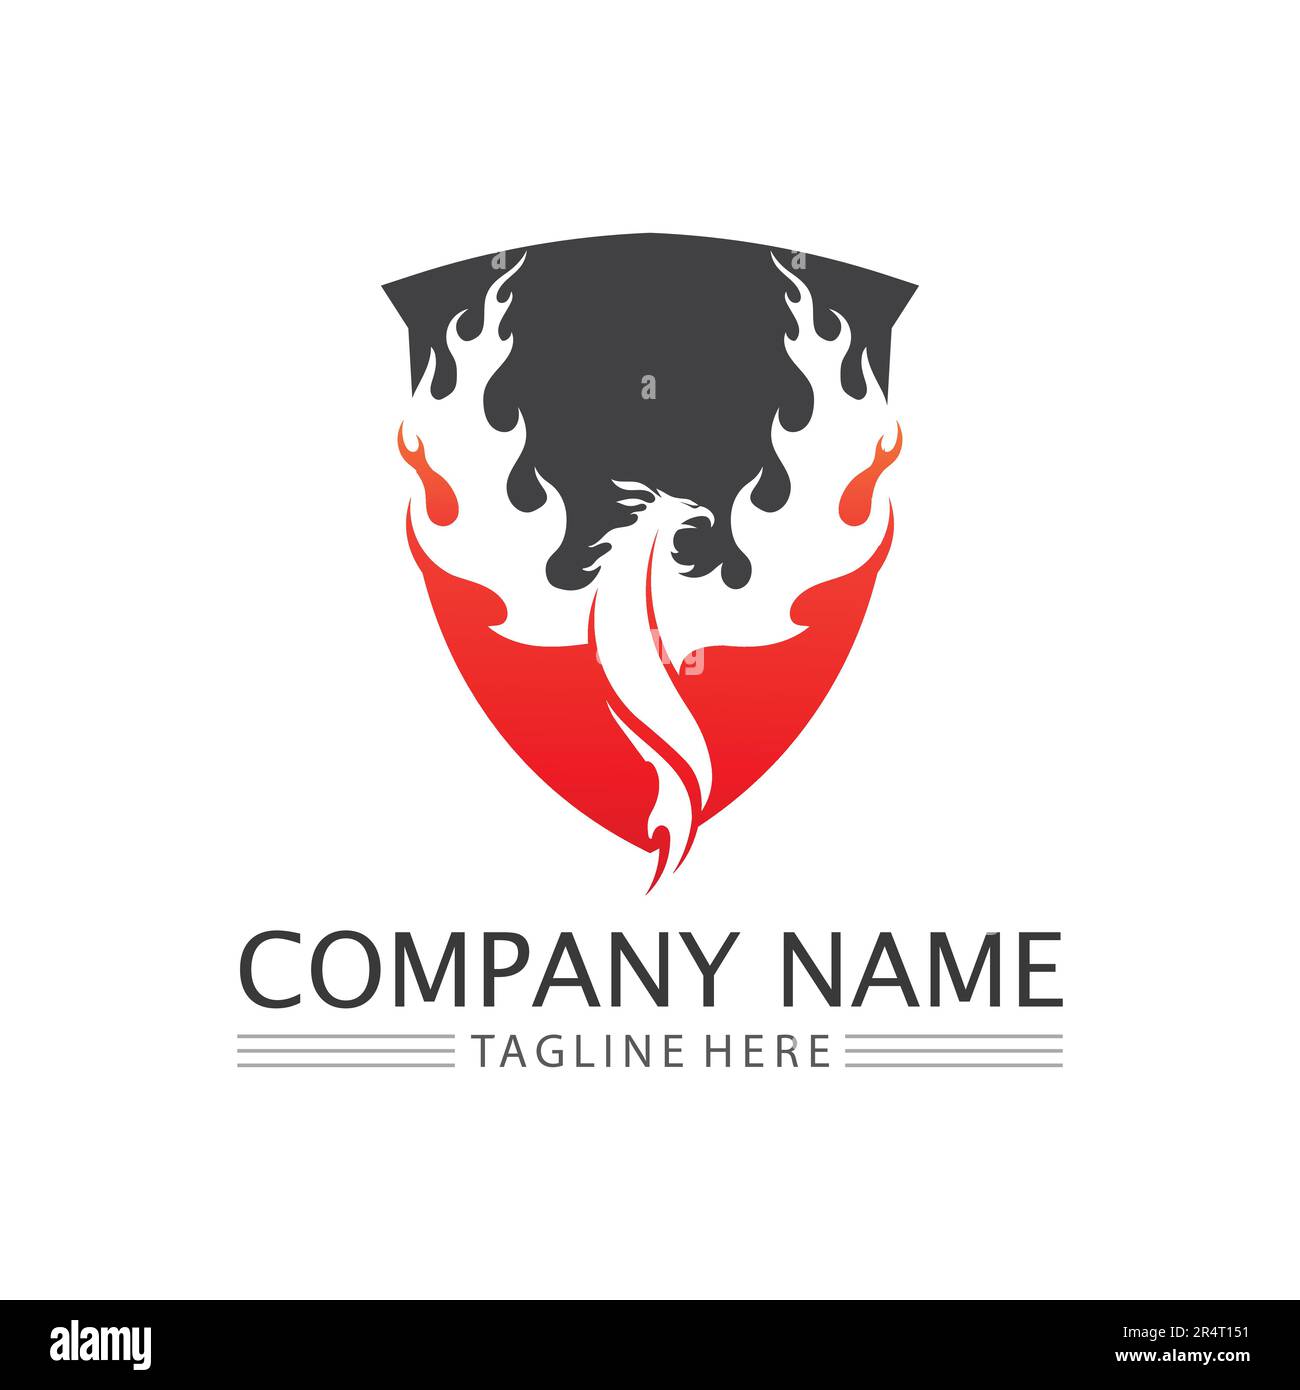 fire flame logo icon vector design template Stock Vector